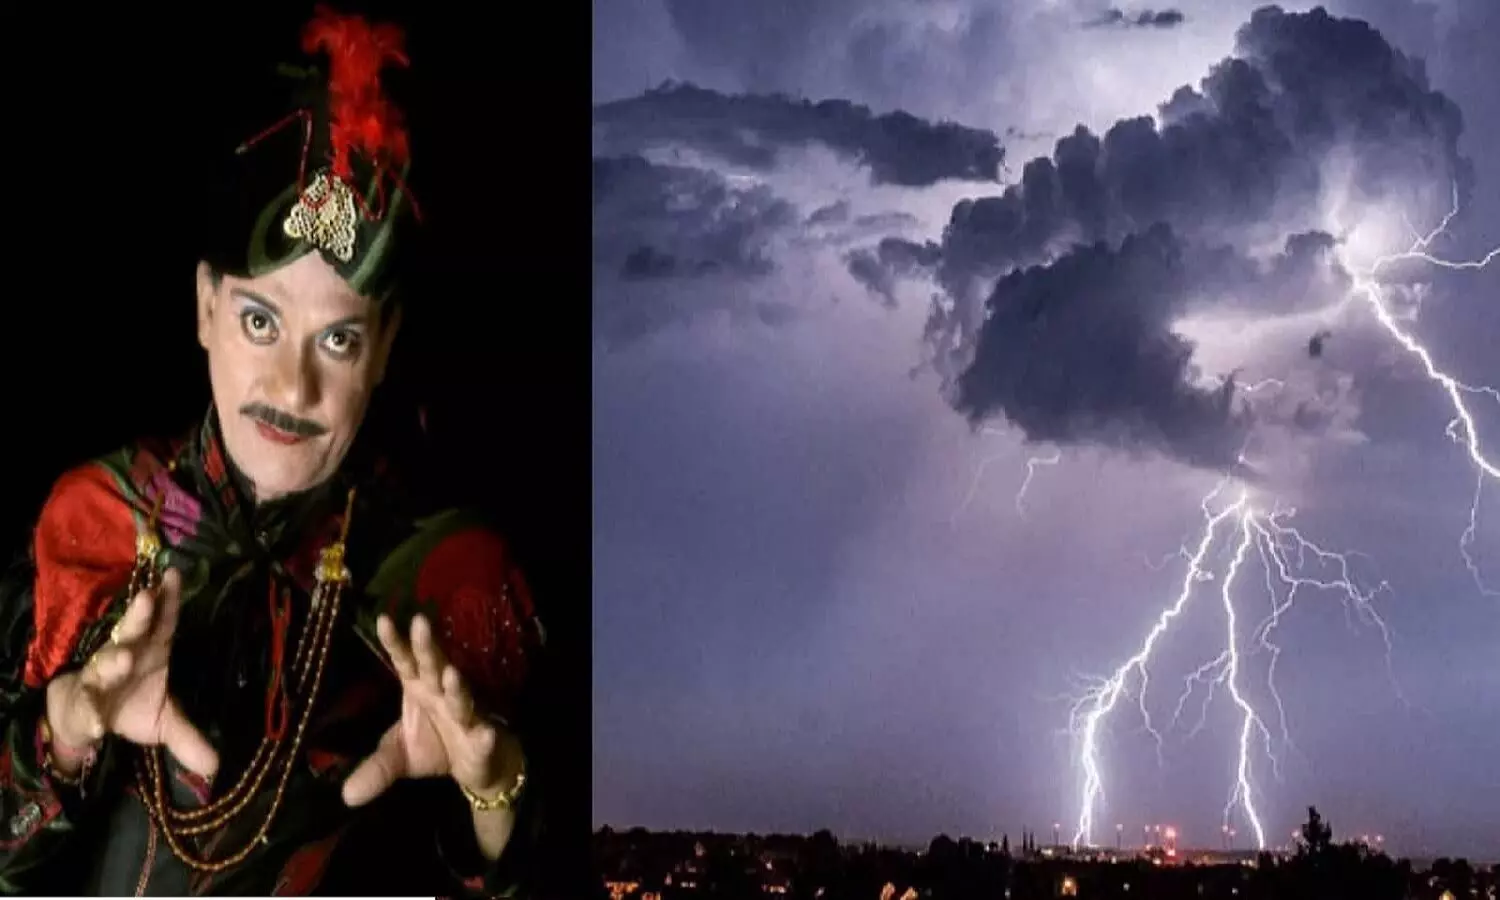 रीवा में बारिश क्यों नहीं हो रही? अब तो जादूगर आनंद भी नहीं है जो बादल बांध दे!